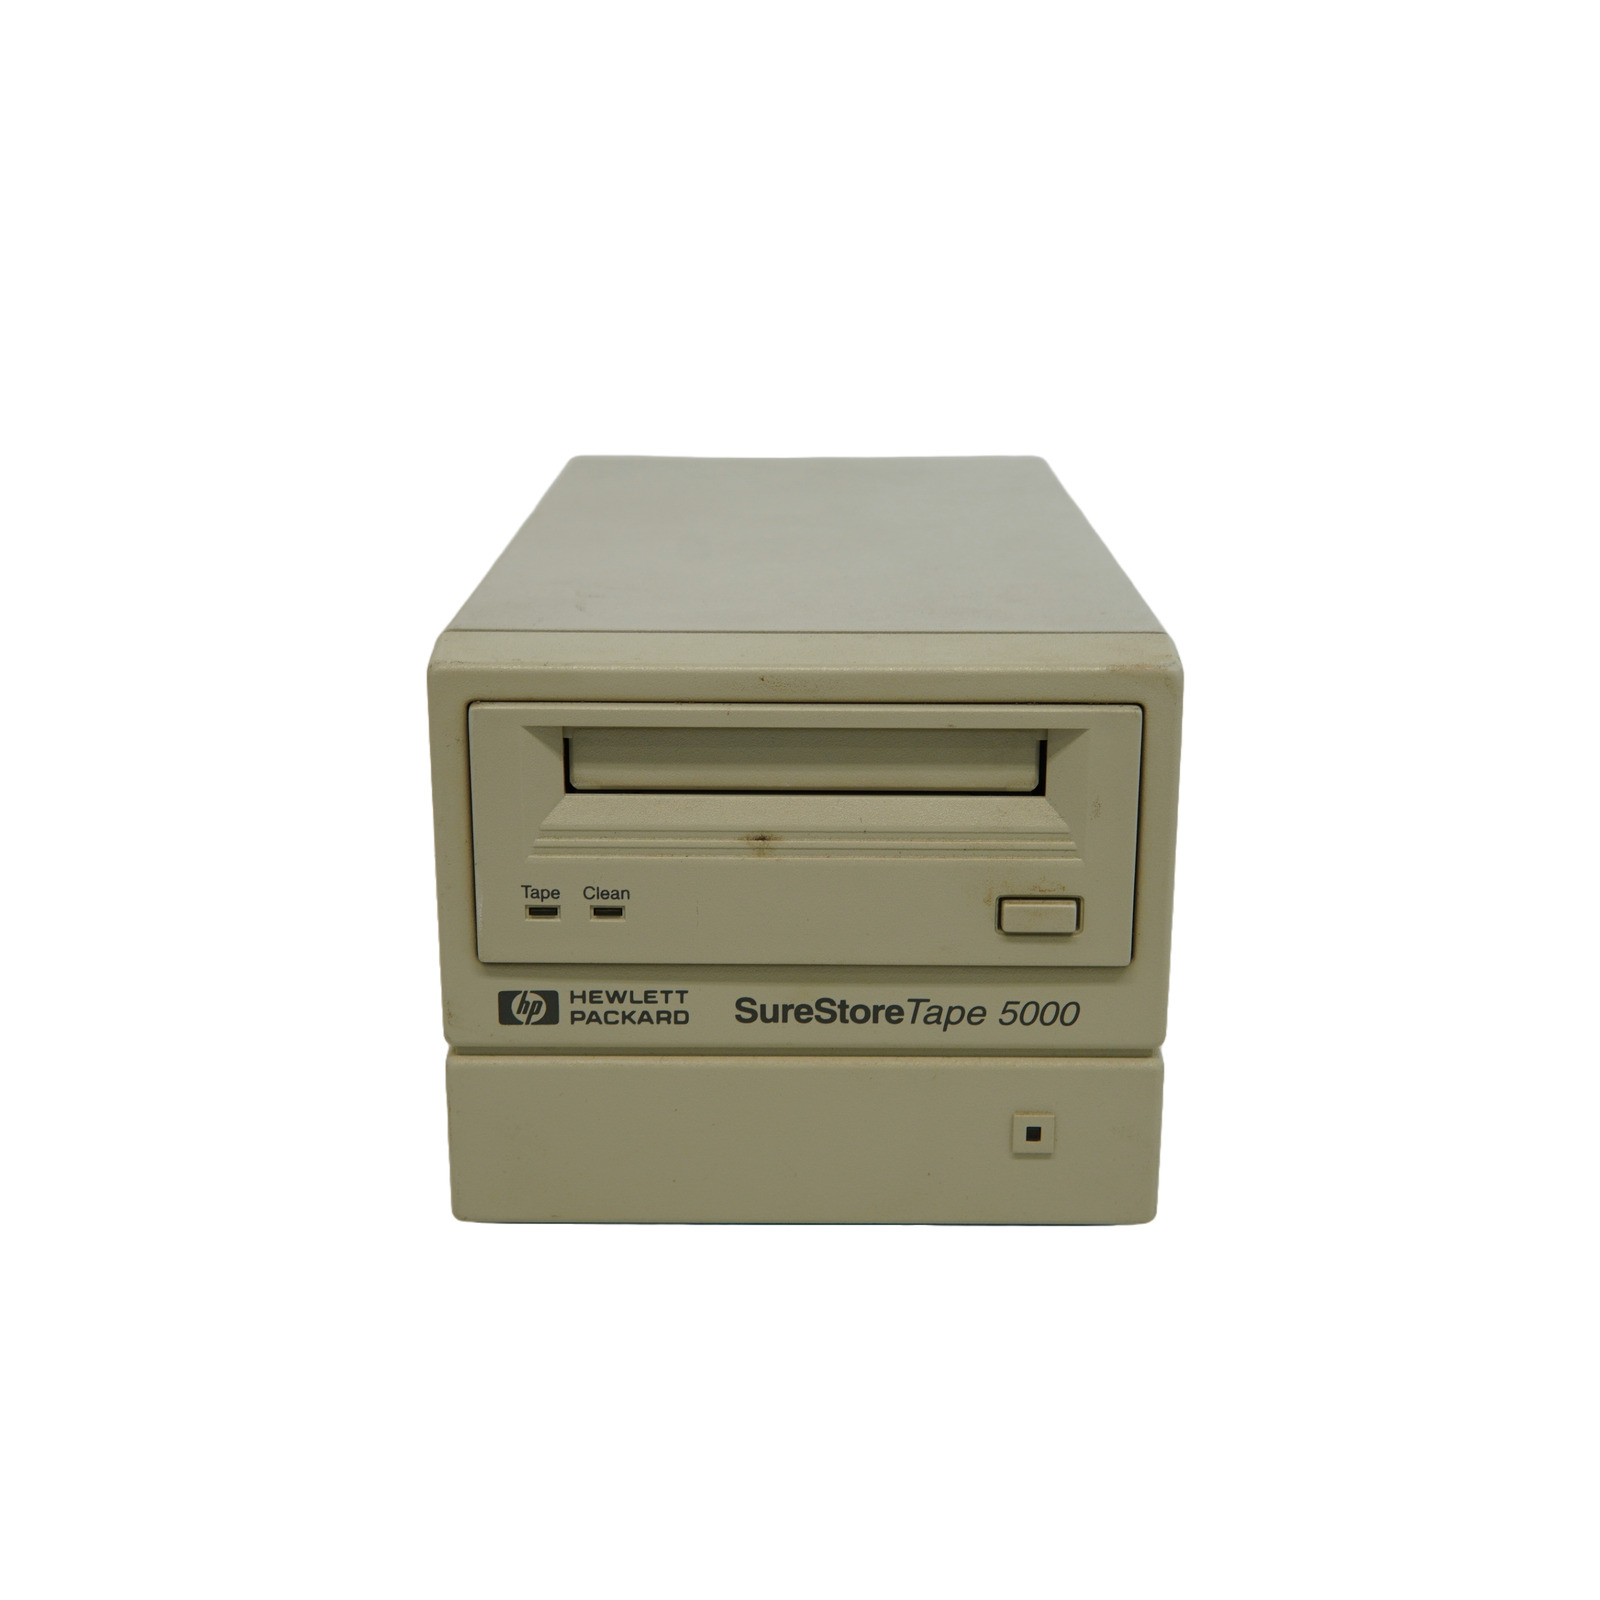 Hewlett Packard SureStore Tape 5000 C1521G